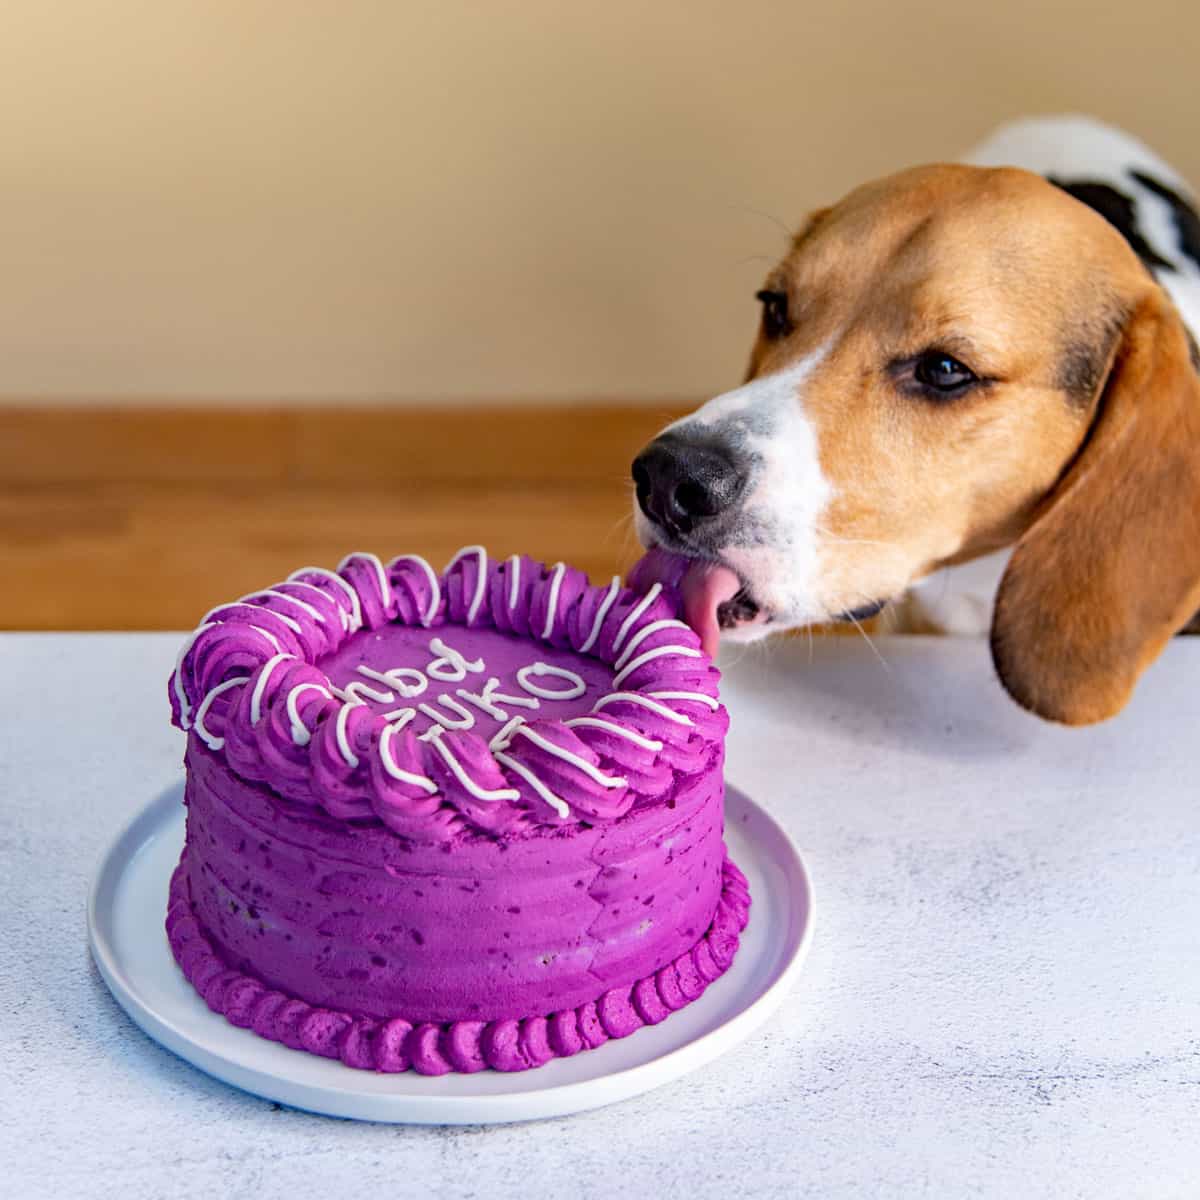 Homemade Dog Cake (Dog Meatloaf Cake) - The Flavor Bender